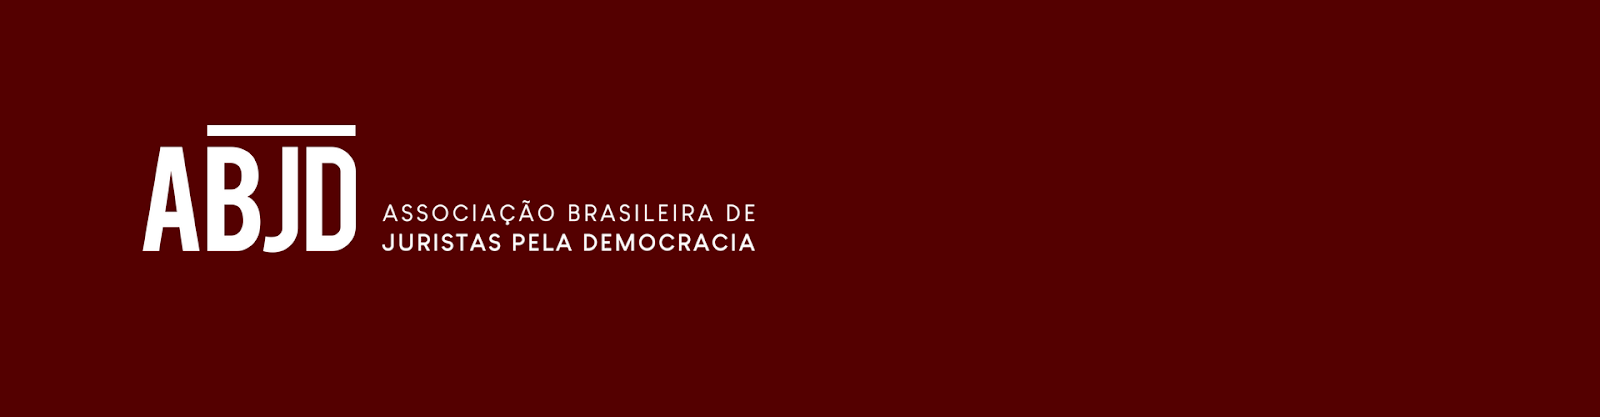 ABJD - Associação Brasileira de Juristas pela Democracia